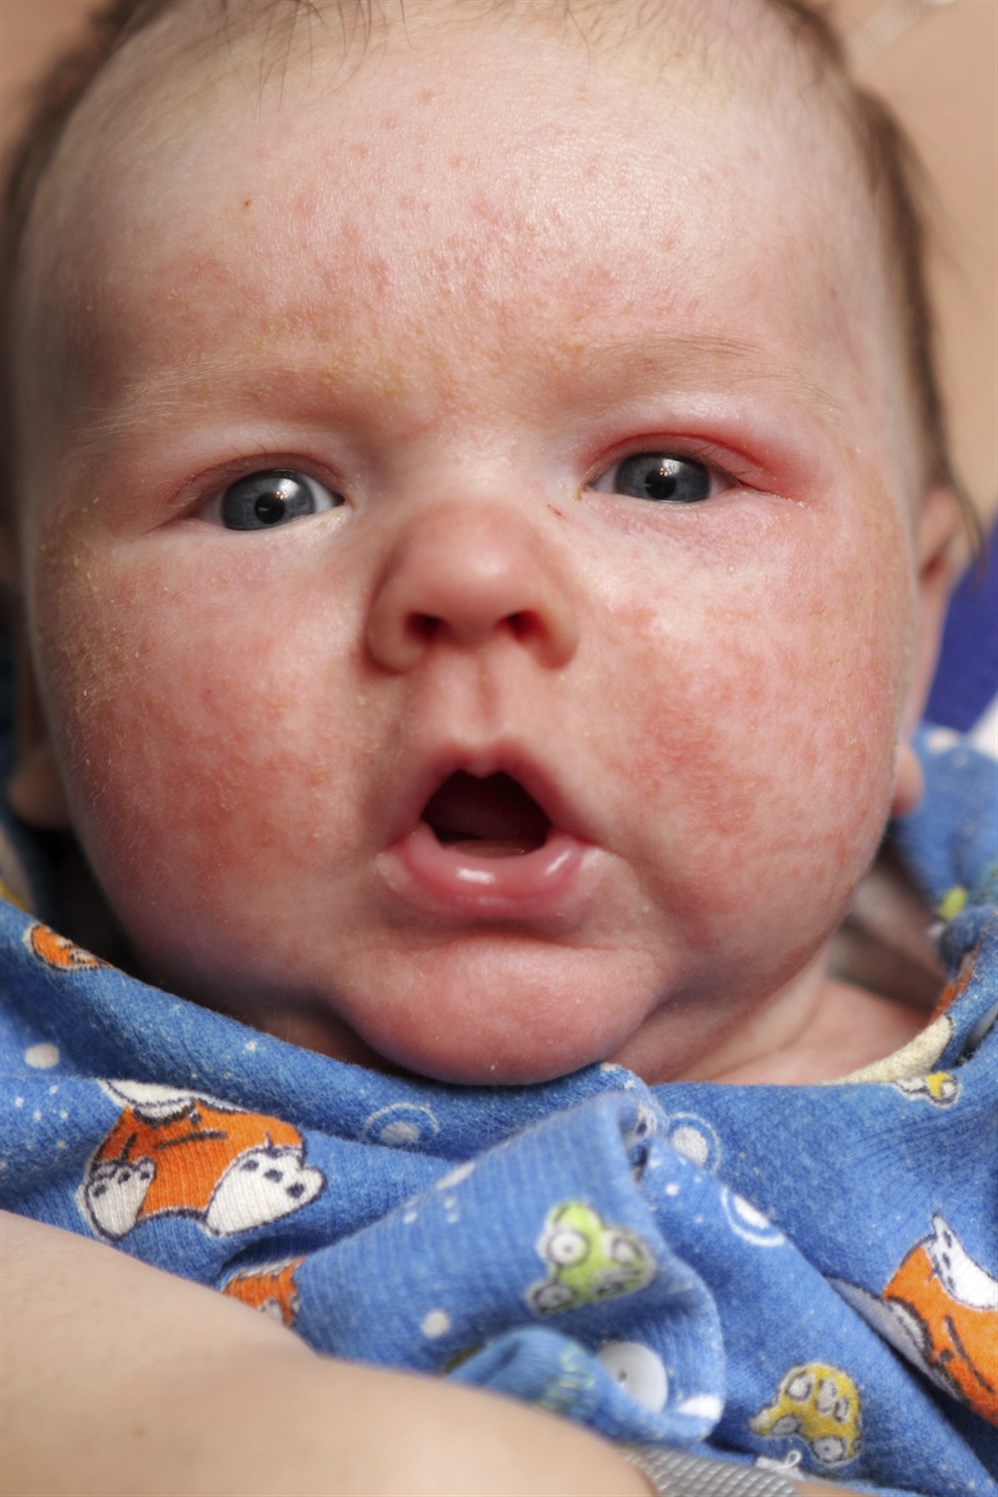 كيفية علاج الأكزيما لدى الرضع